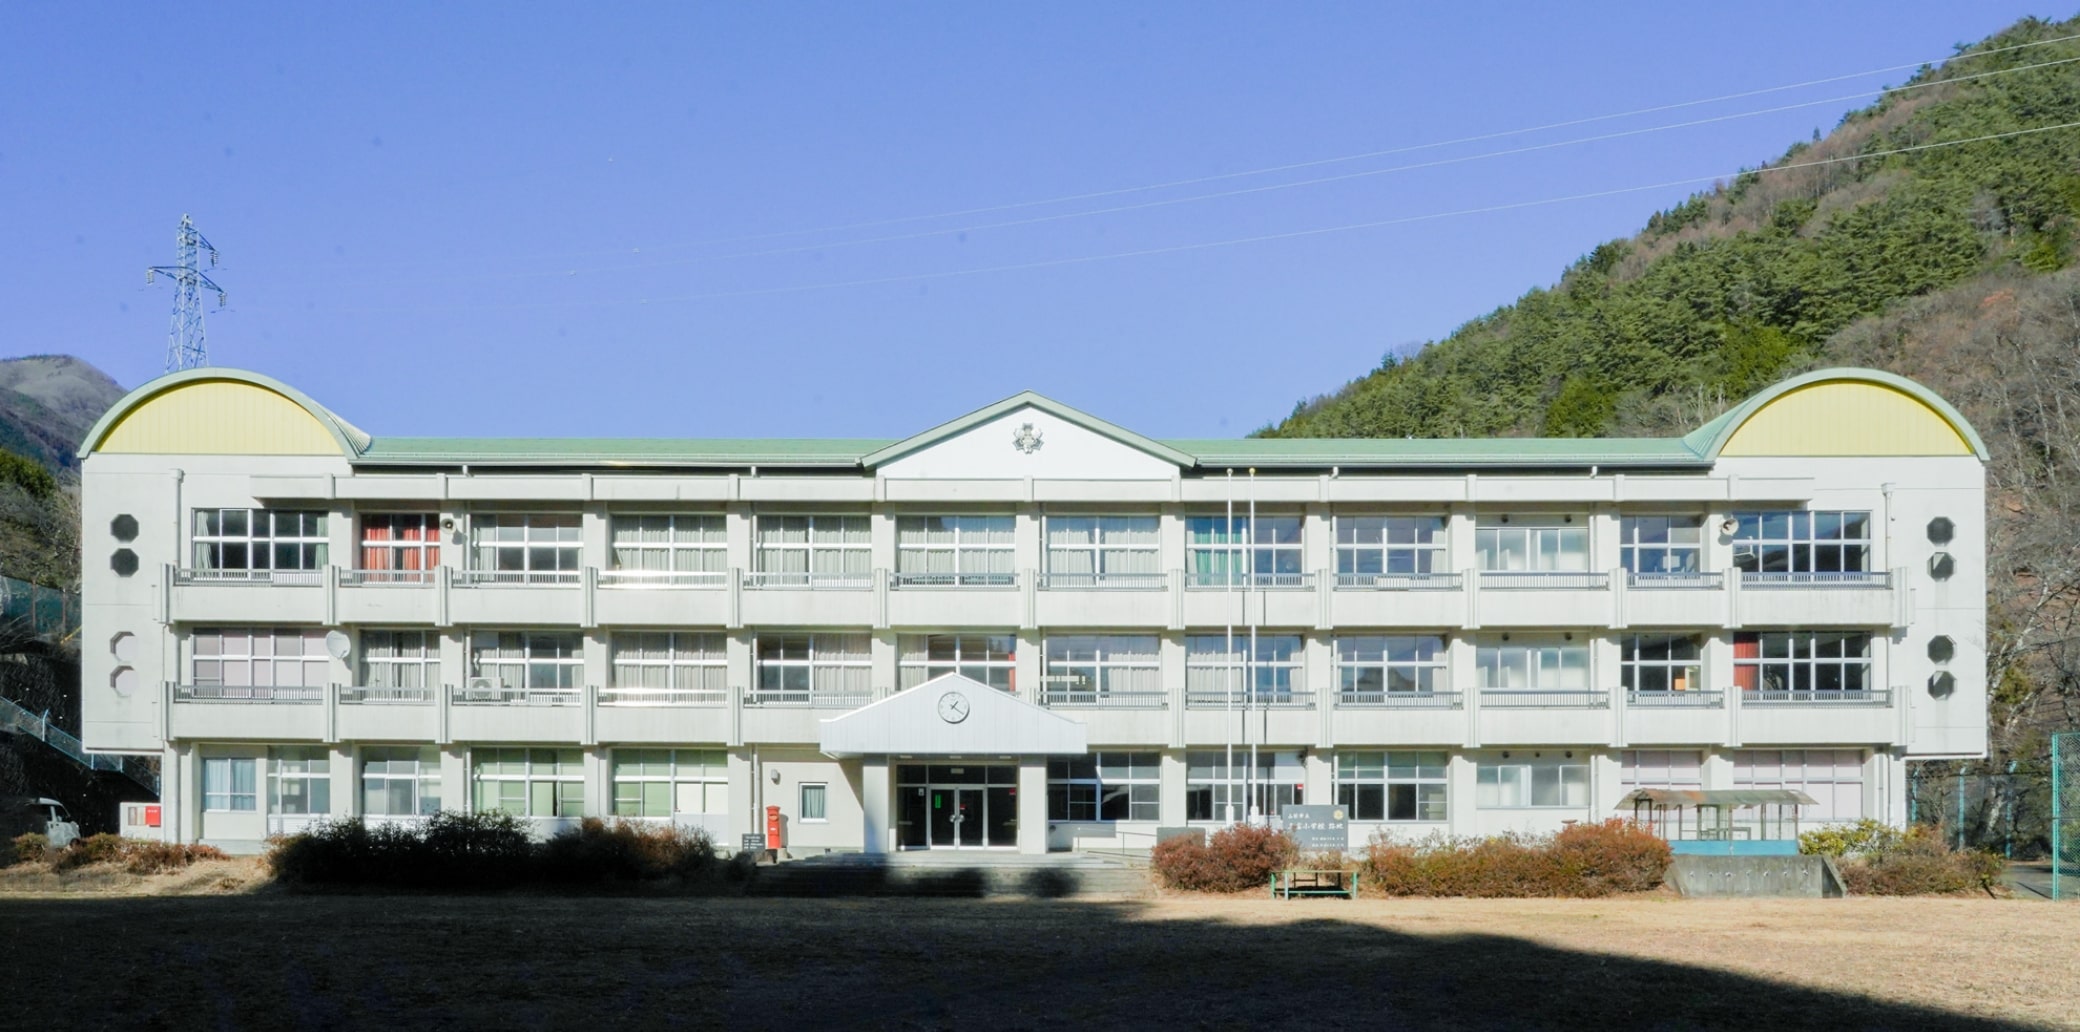 三富小学校の校舎を正面から写した写真